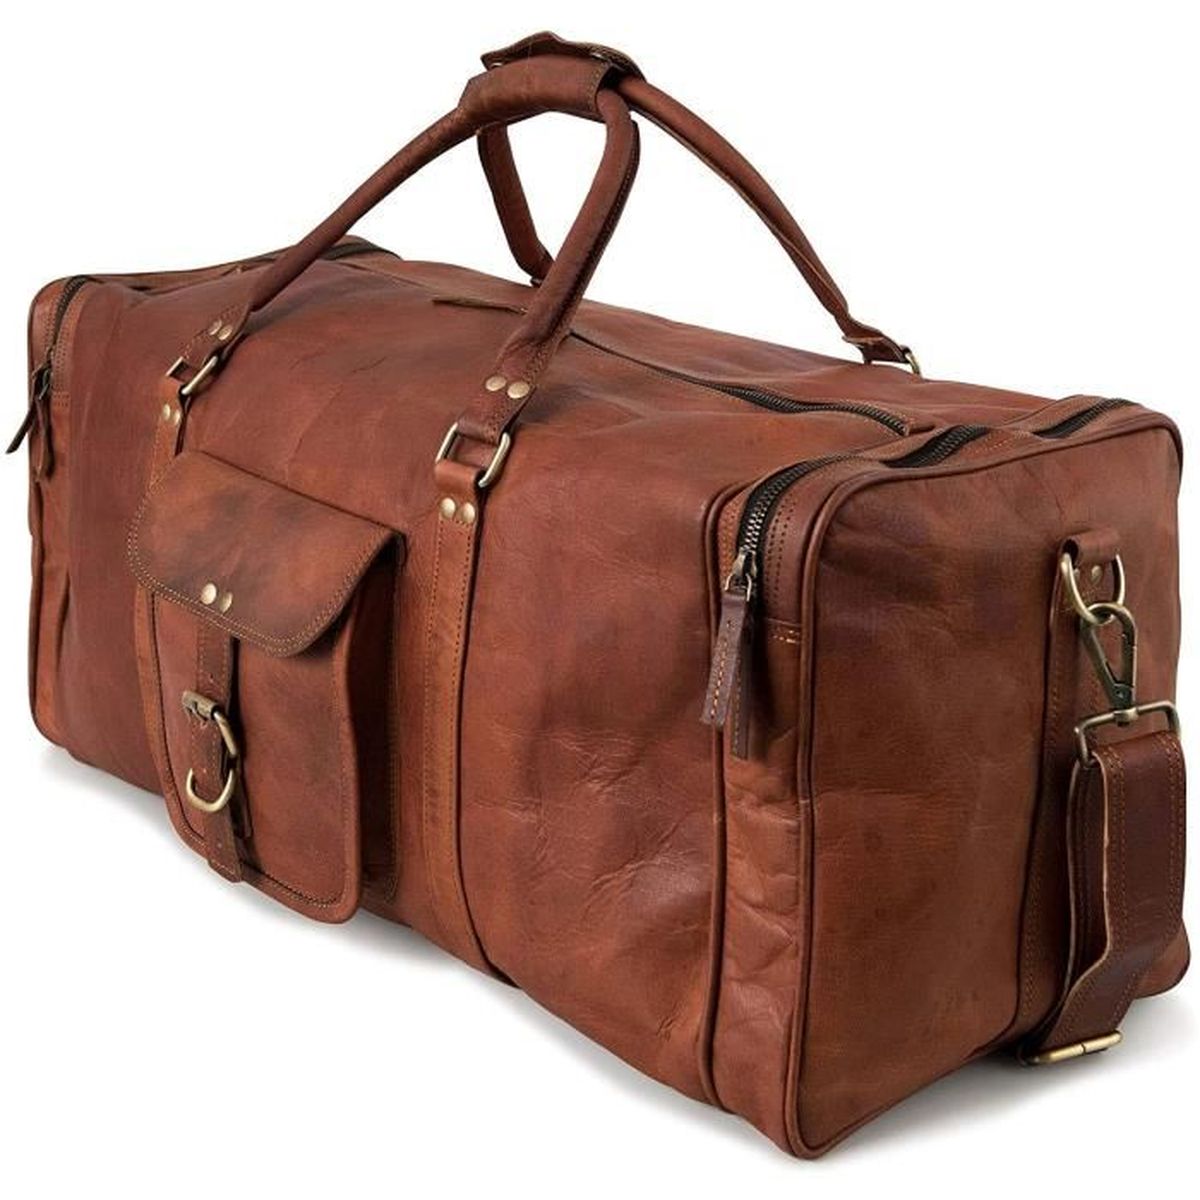 Sacs et bagages Bagages et sacs de voyage Sacs de voyage sac à bagages. Sac de voyage en cuir brun vintage 